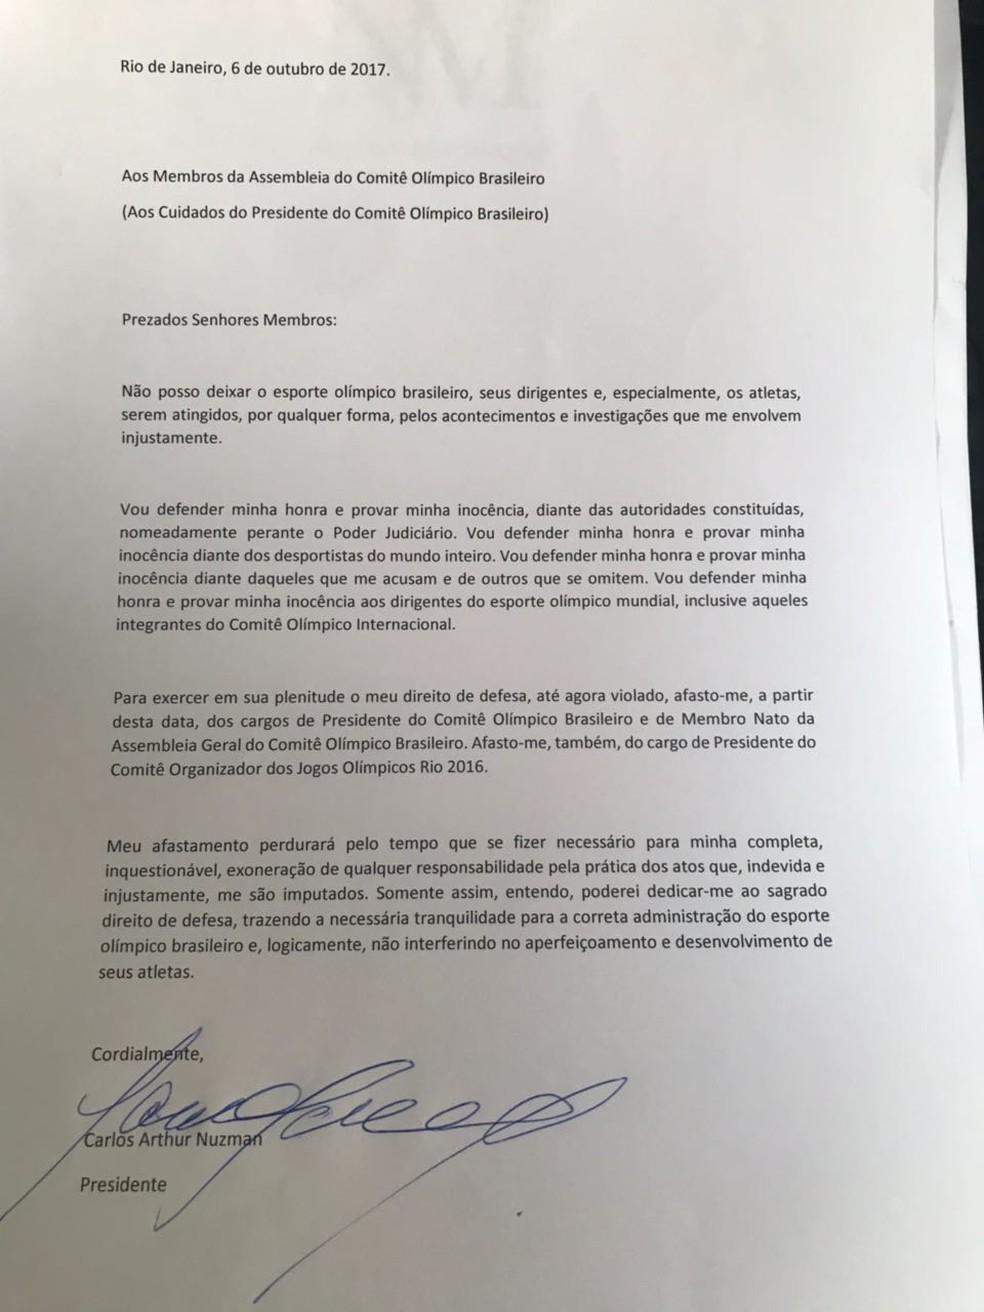 Em carta, Nuzman pede afastamento do COB (Foto: Reprodução)